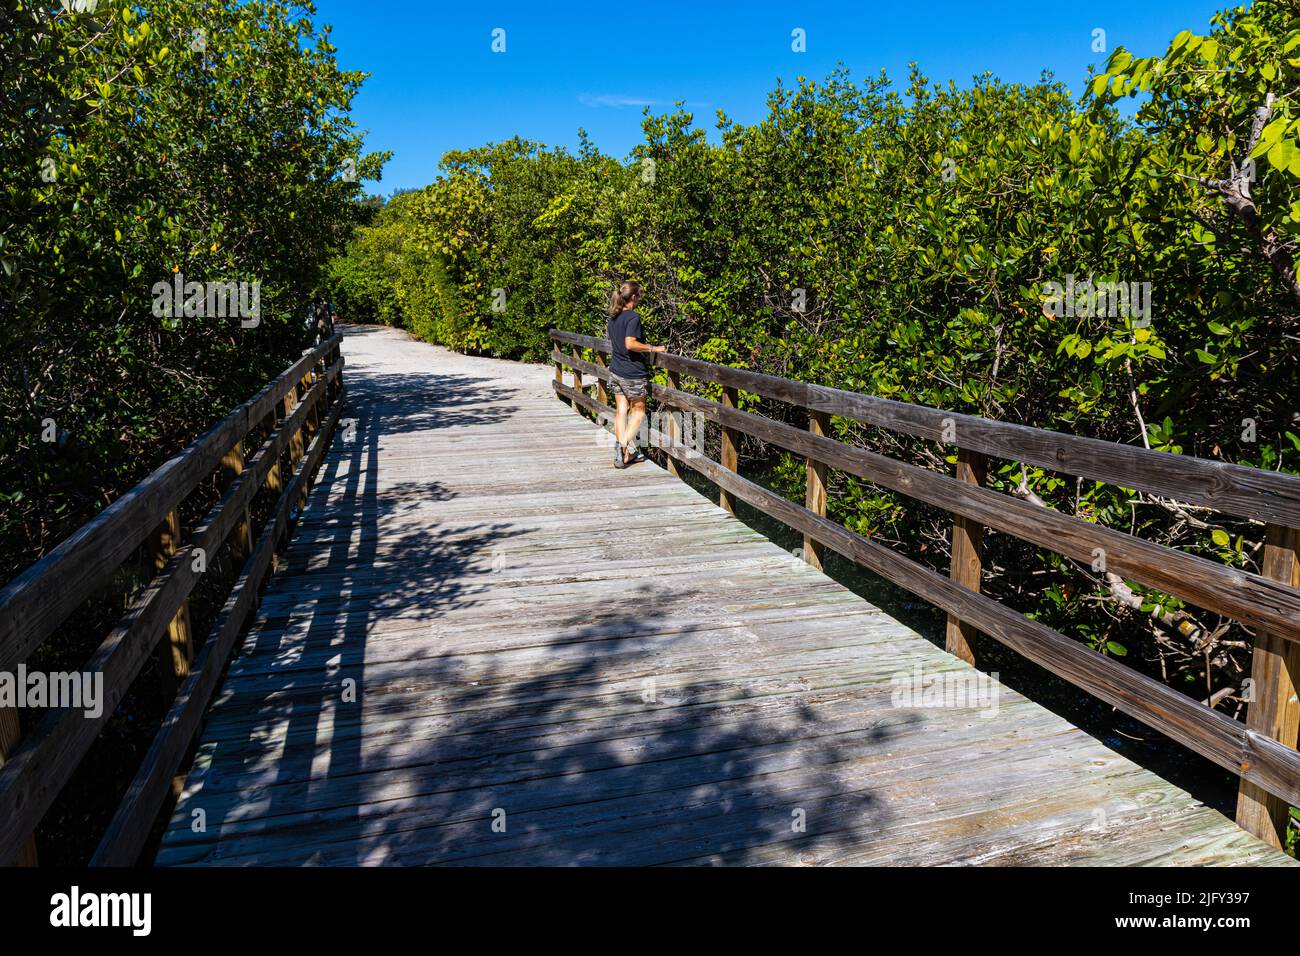 Promenade à travers la forêt de mangroves sur Sarasota Bay, Leffis Key Preserve, Bradenton Beach, Floride, États-Unis Banque D'Images